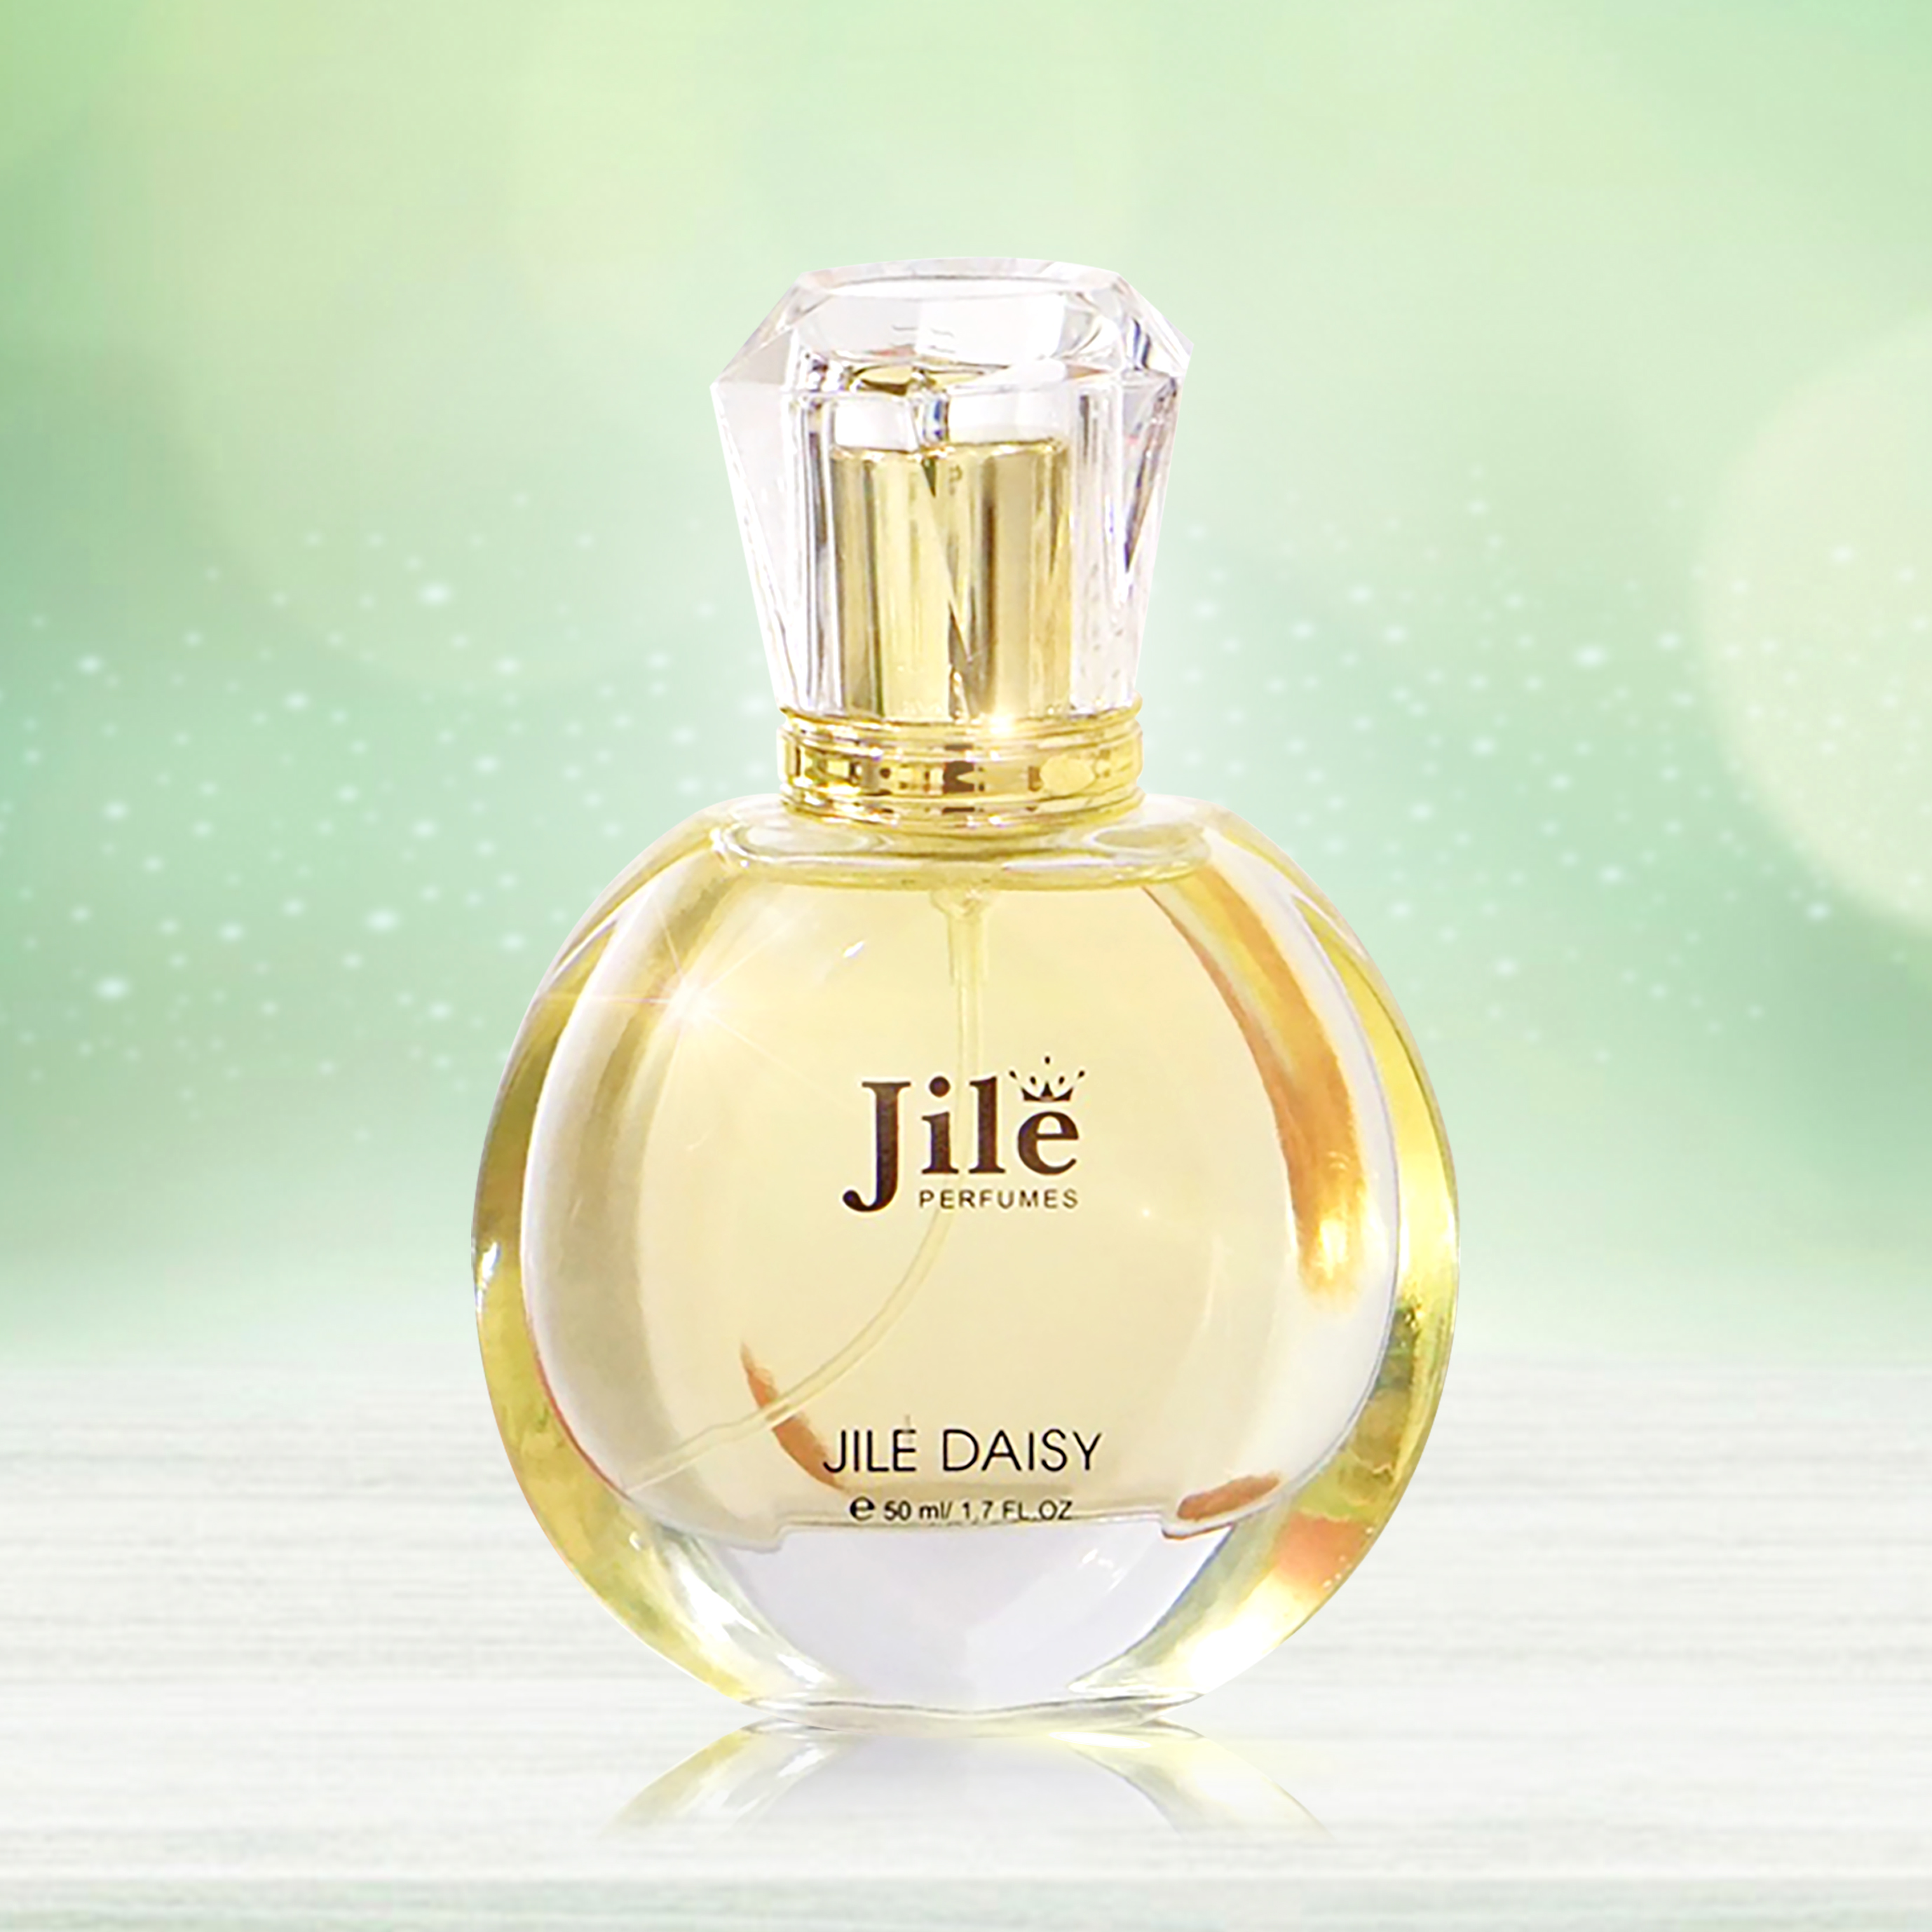 [HCM]Nước hoa nữ thơm lâu Jile Daisy 50ml (Chance) nuoc hoa nu chính hãng cao cấp hương thơm dịu nhẹ quyến rũ